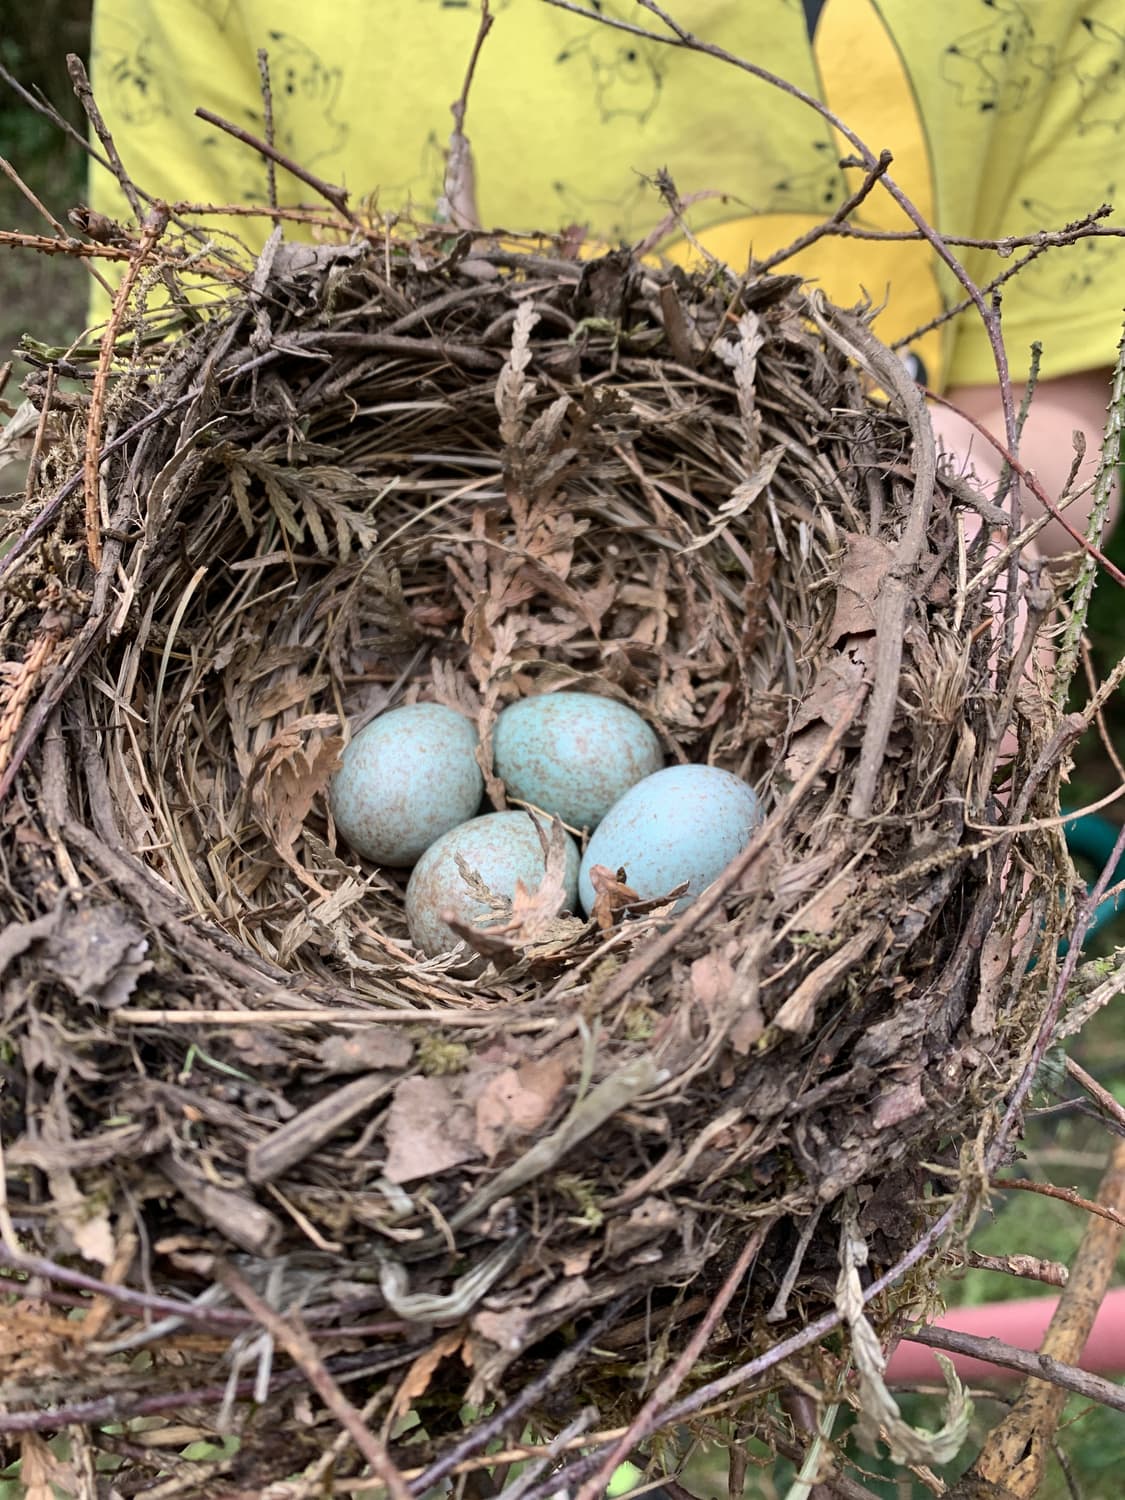 Bird nest with four eggs inside